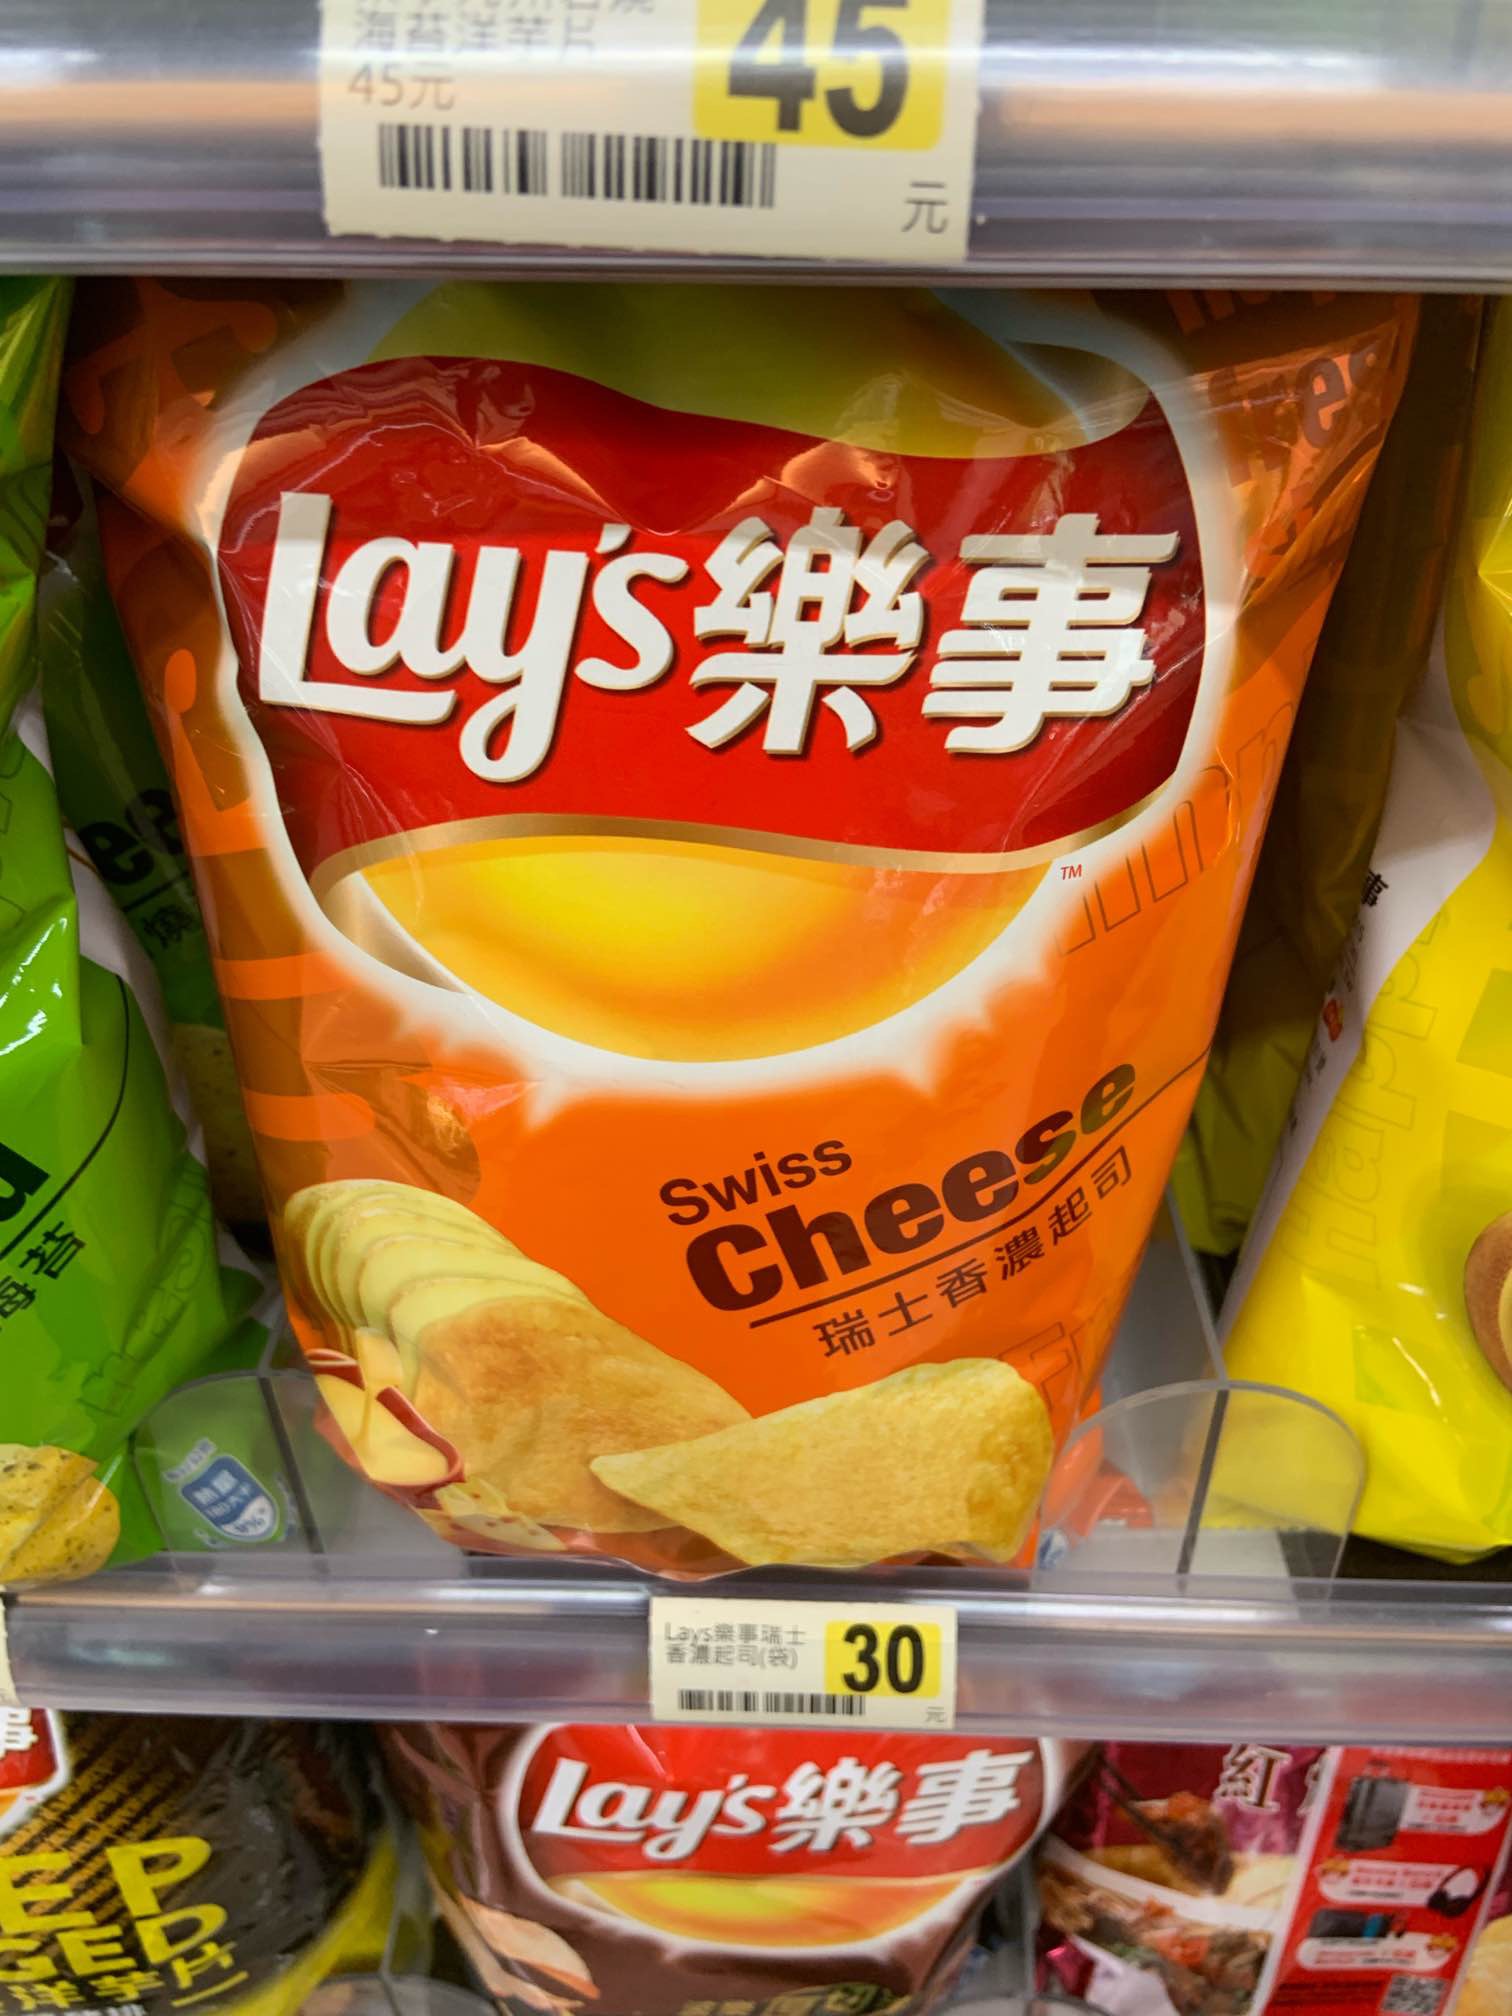 Swiss Cheese – Singapore – Lay's Around the World